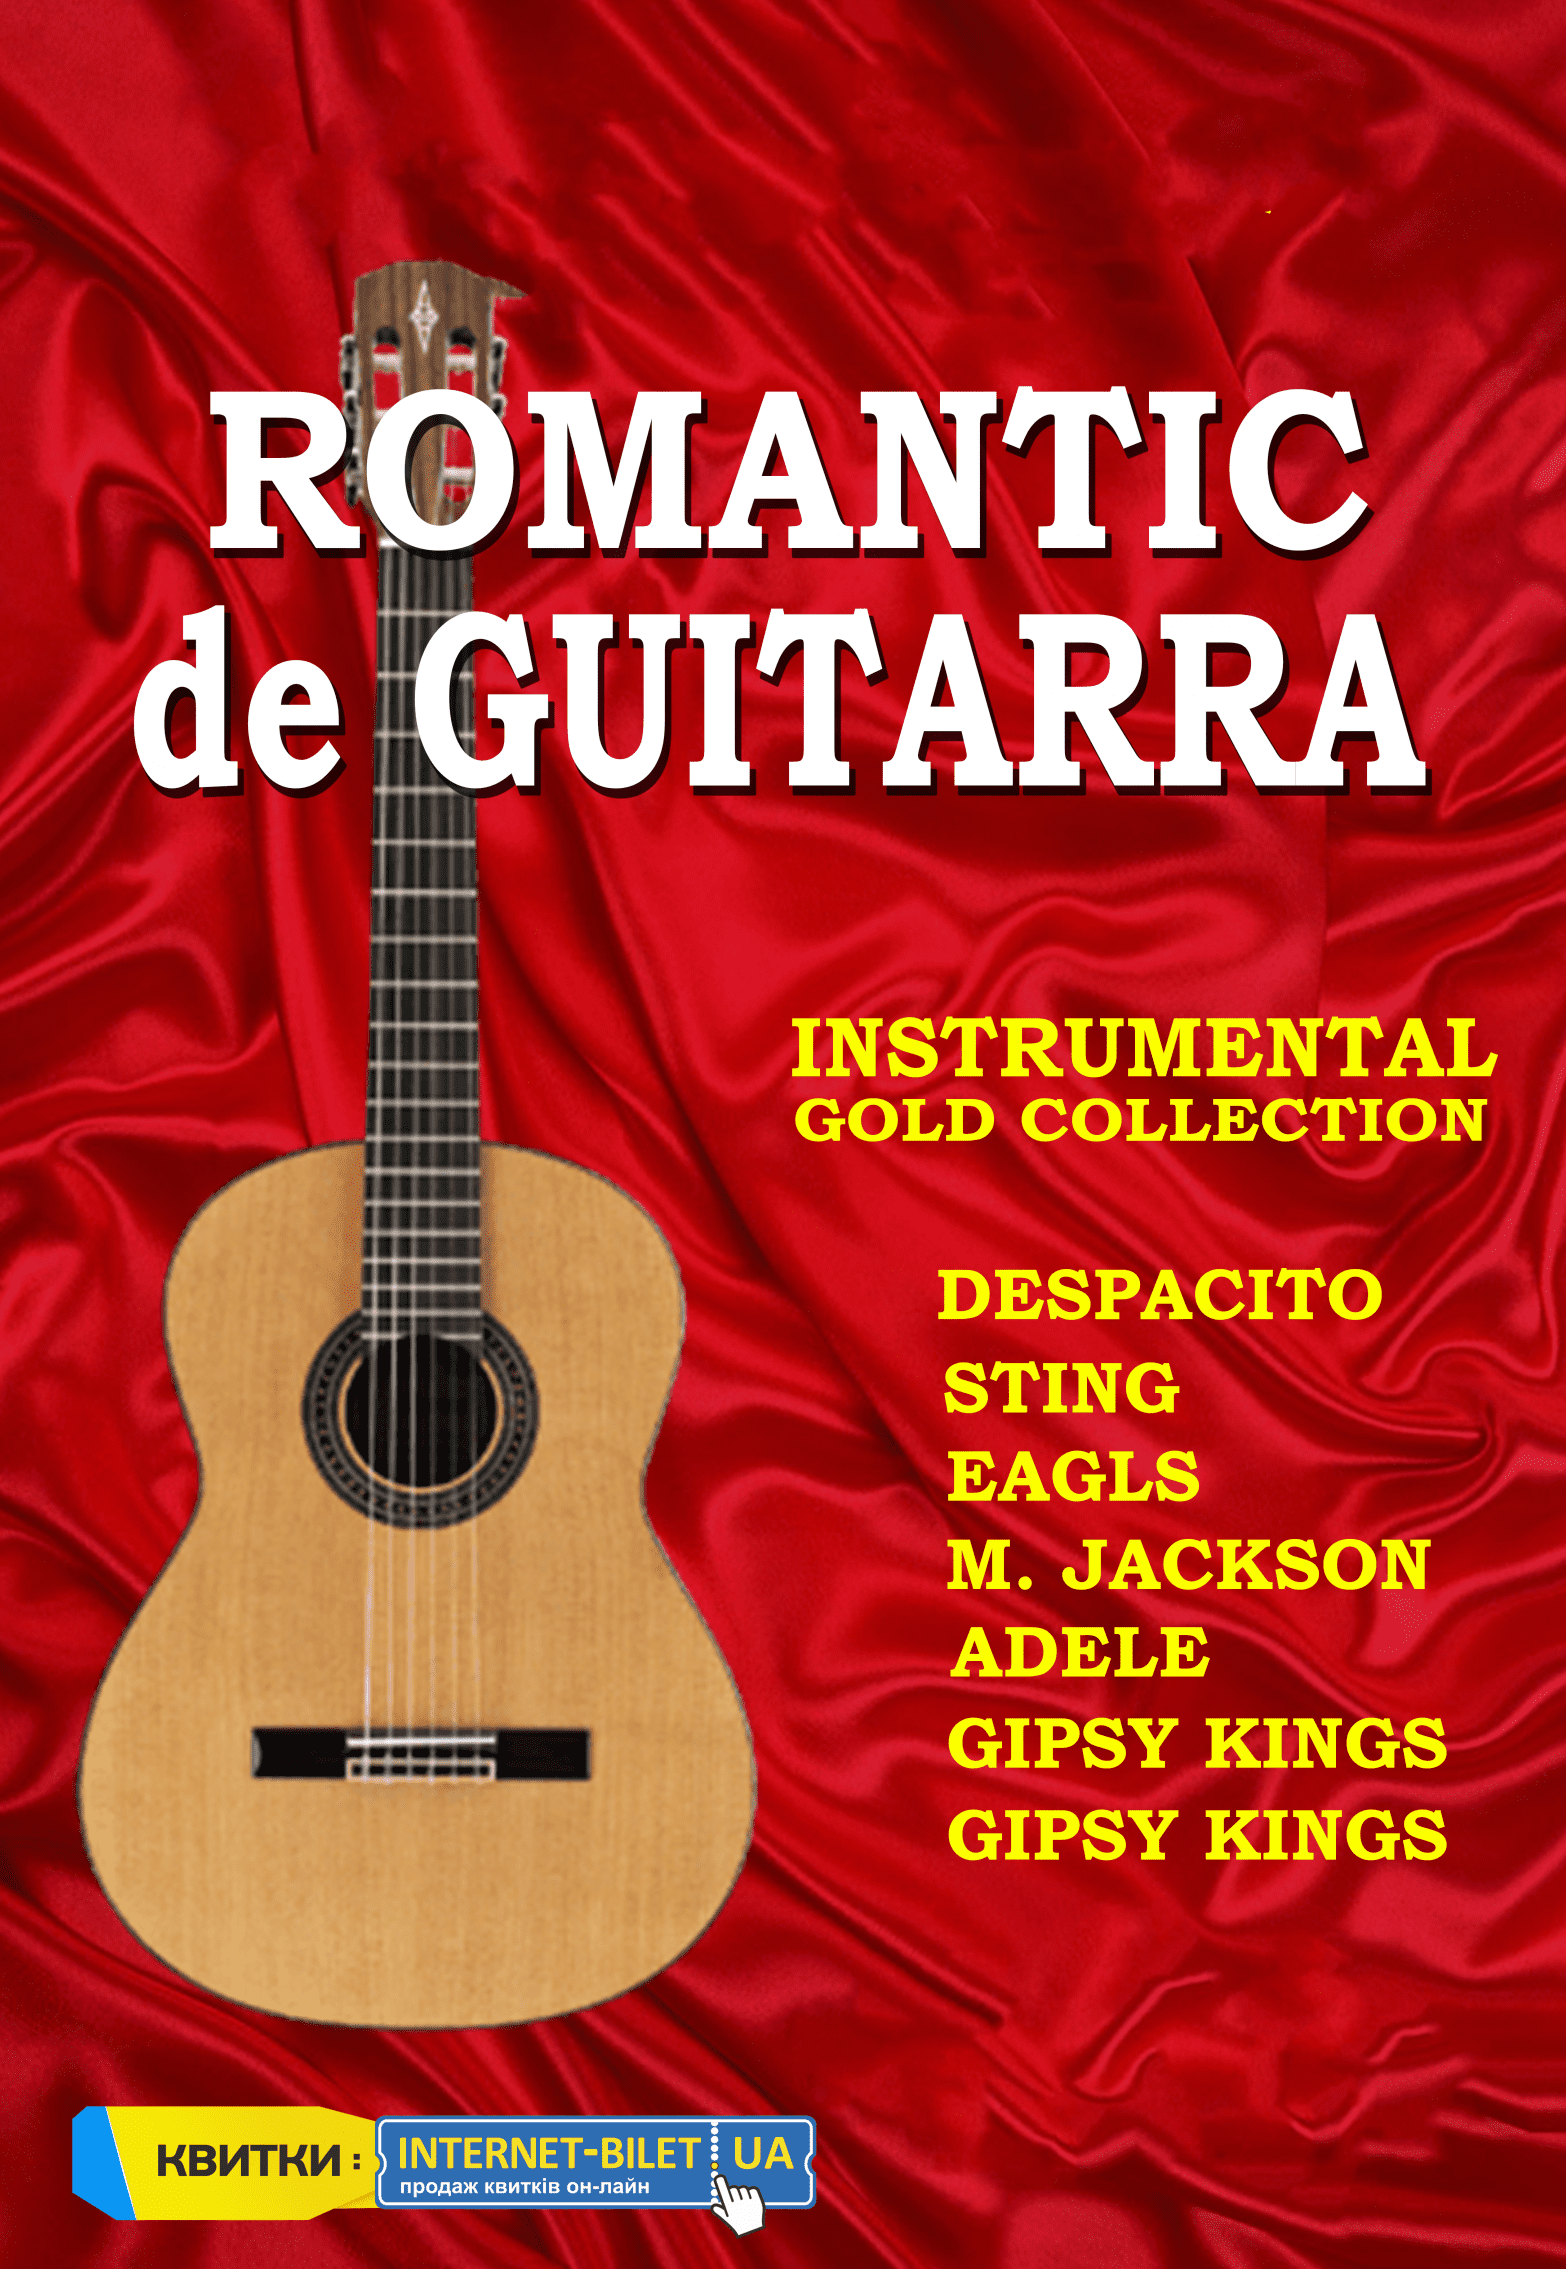 Romantic de GUITARRA Днепр 28.02.2019, купить билеты. Афиша Днепра